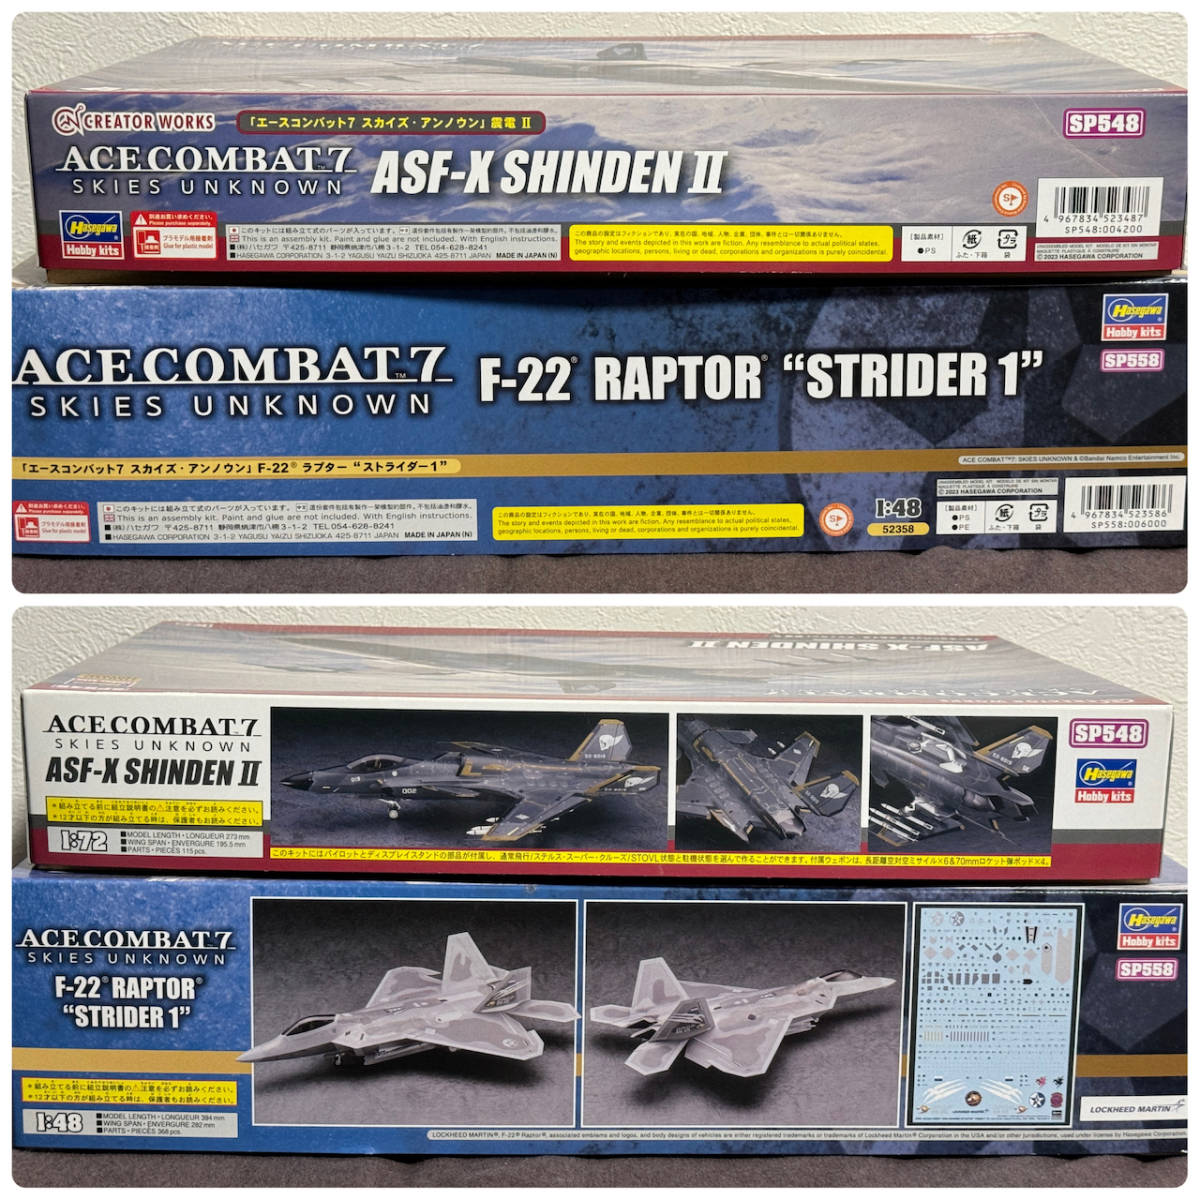 震電2 F-22 ラプター ストライダー1 ACECOMBAT 7 SKIES UNKNOWN セット ASF-X SHINDEN Ⅱ RAPTOR STRIDER 1 ハセガワ 限定版 SP548 SP558_画像3